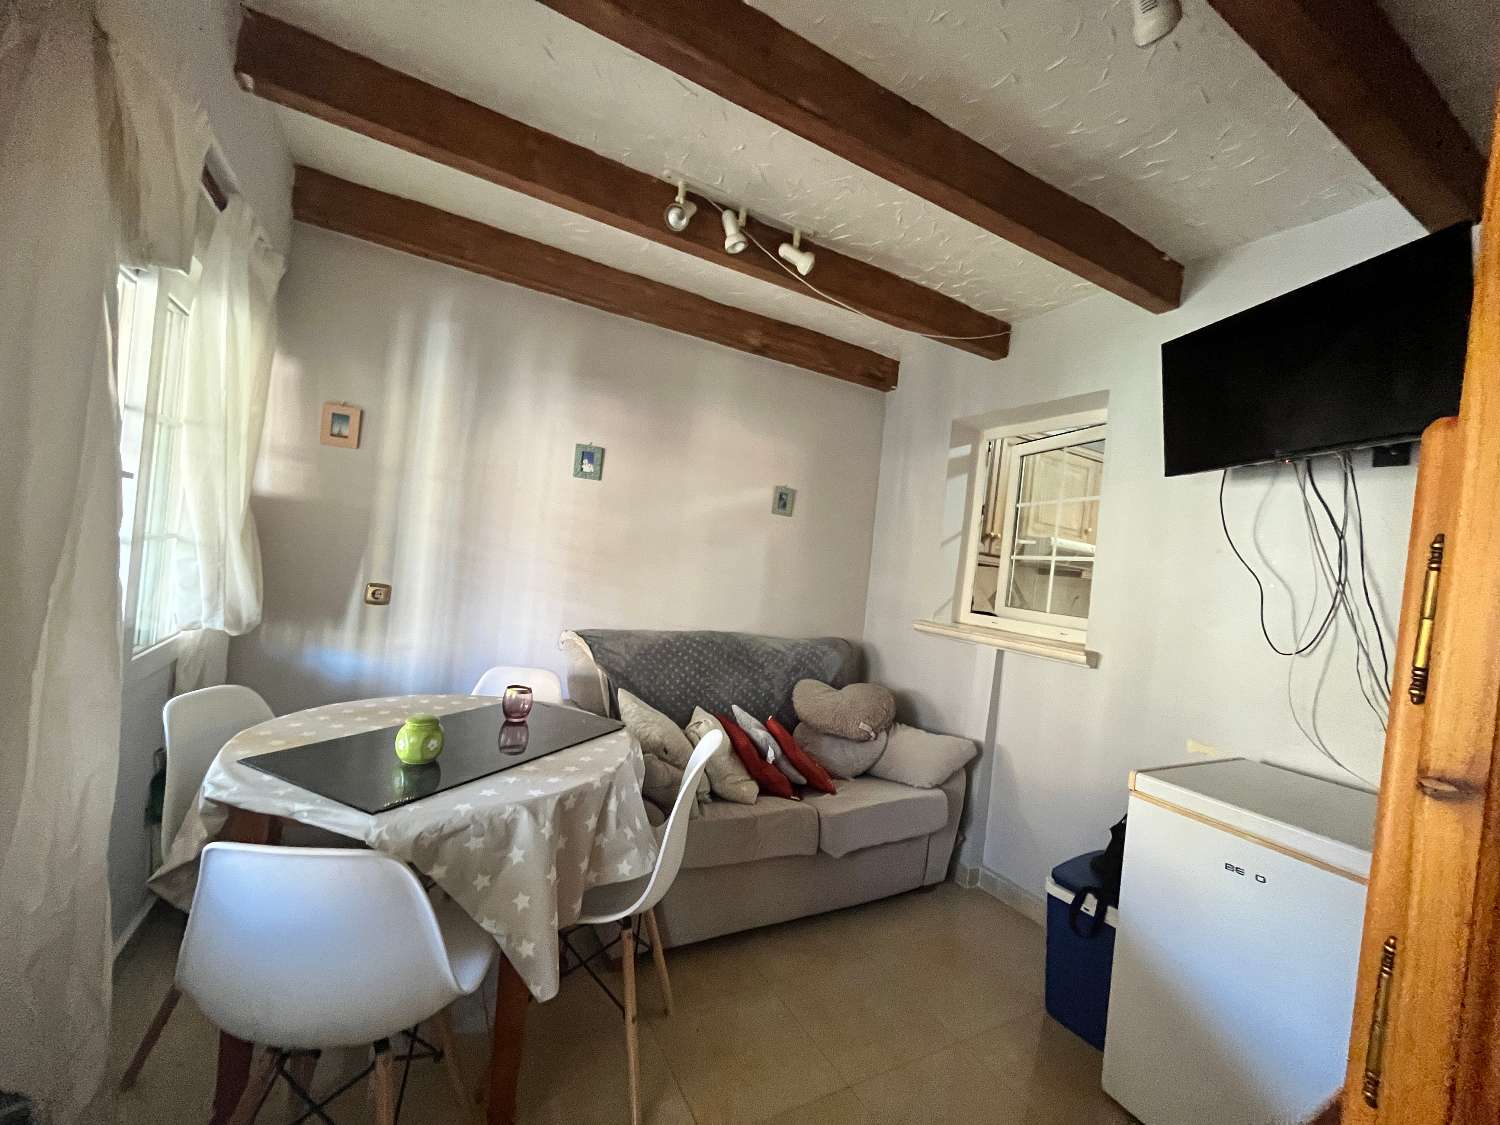 Estupendo duplex de 3 dormitorios, 2 baños situado en el centro de Playa Flamenca